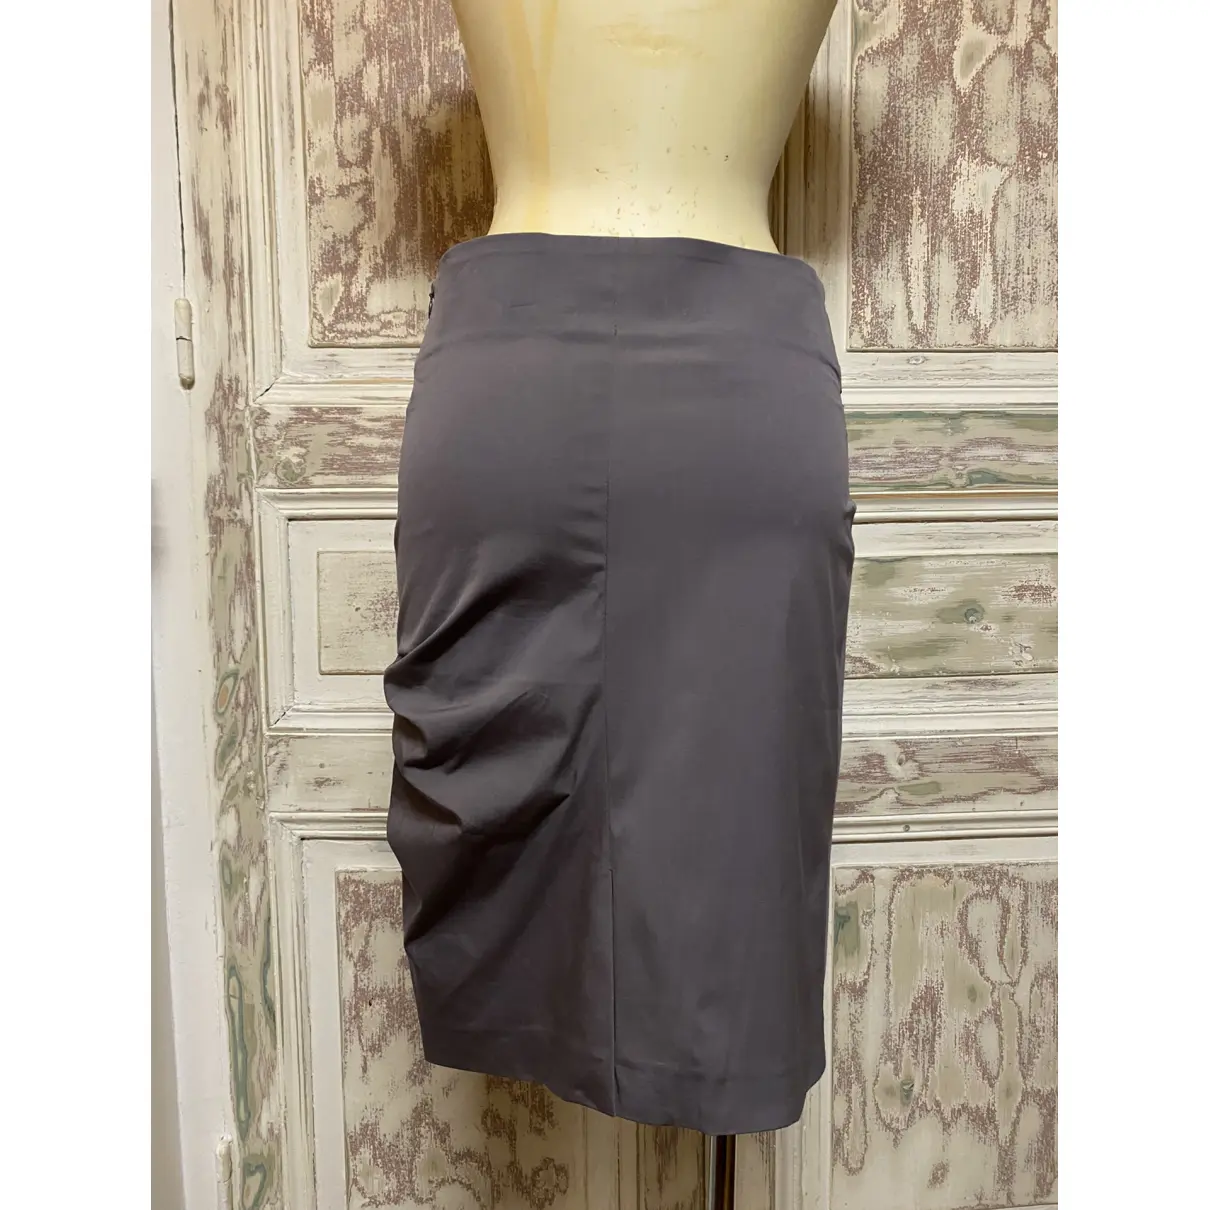 Buy Brunello Cucinelli Mid-length skirt online